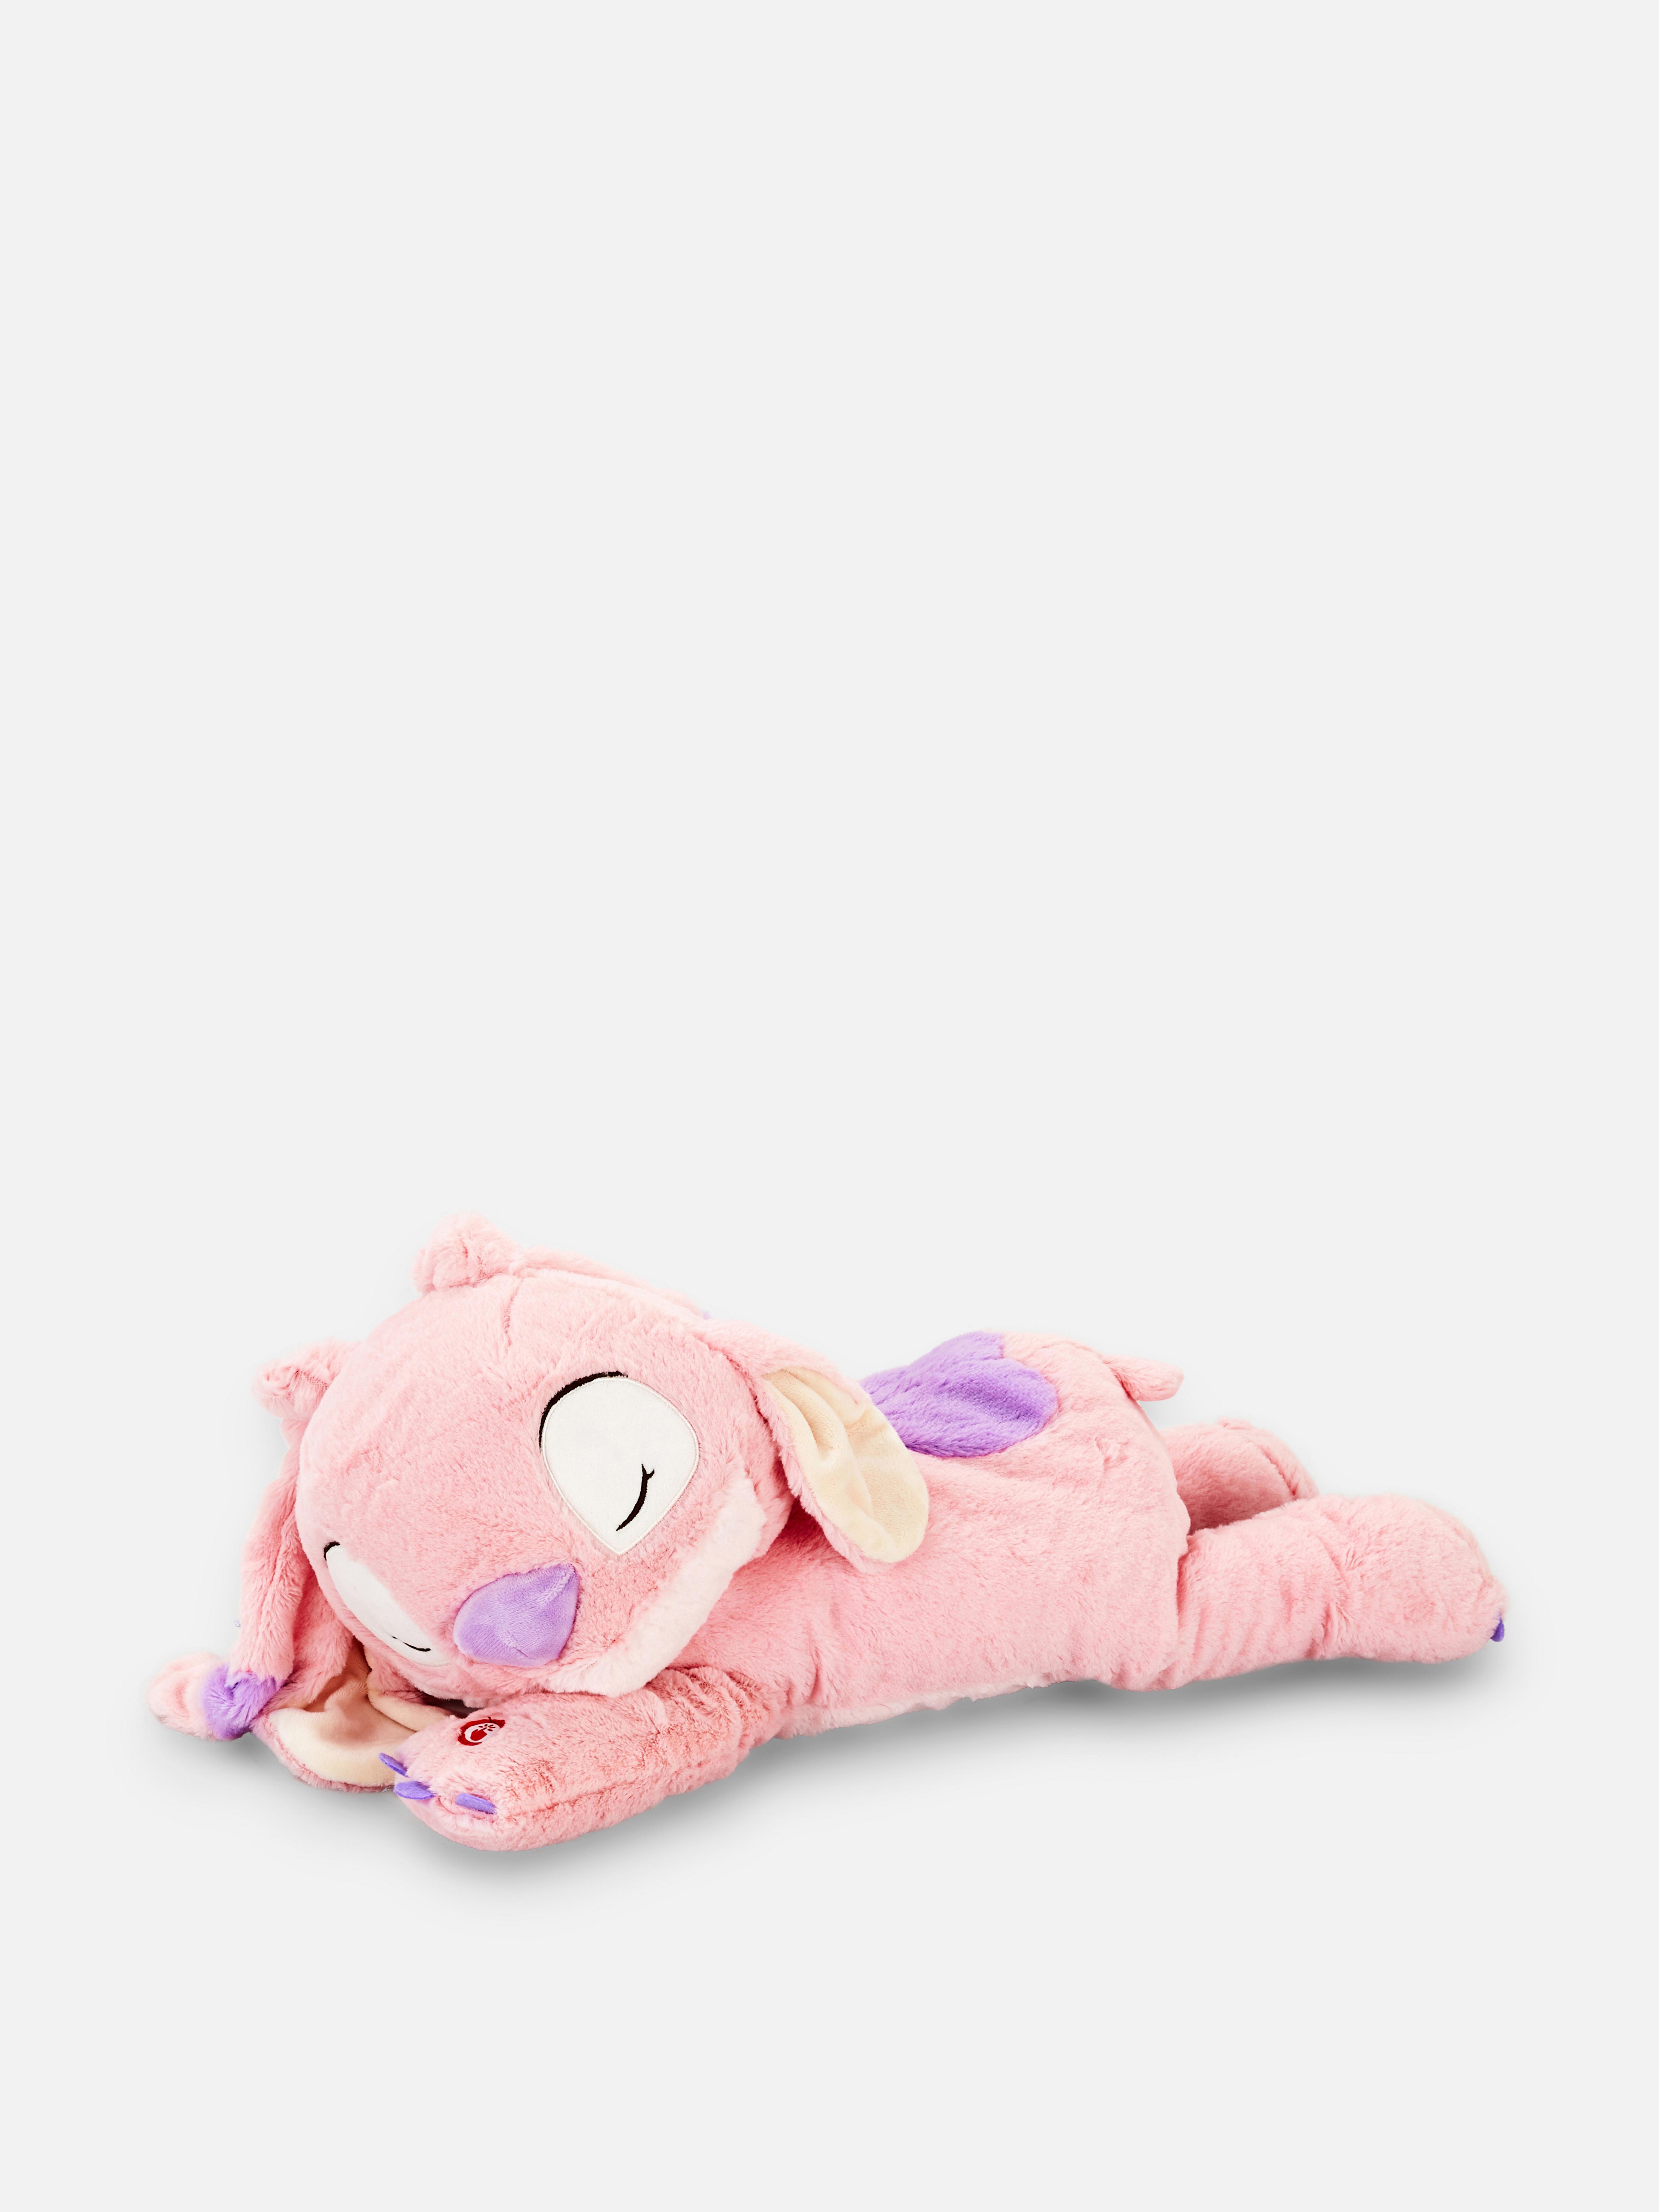 Disney’s Lilo & Stitch Sleeping Angel Plush Toy